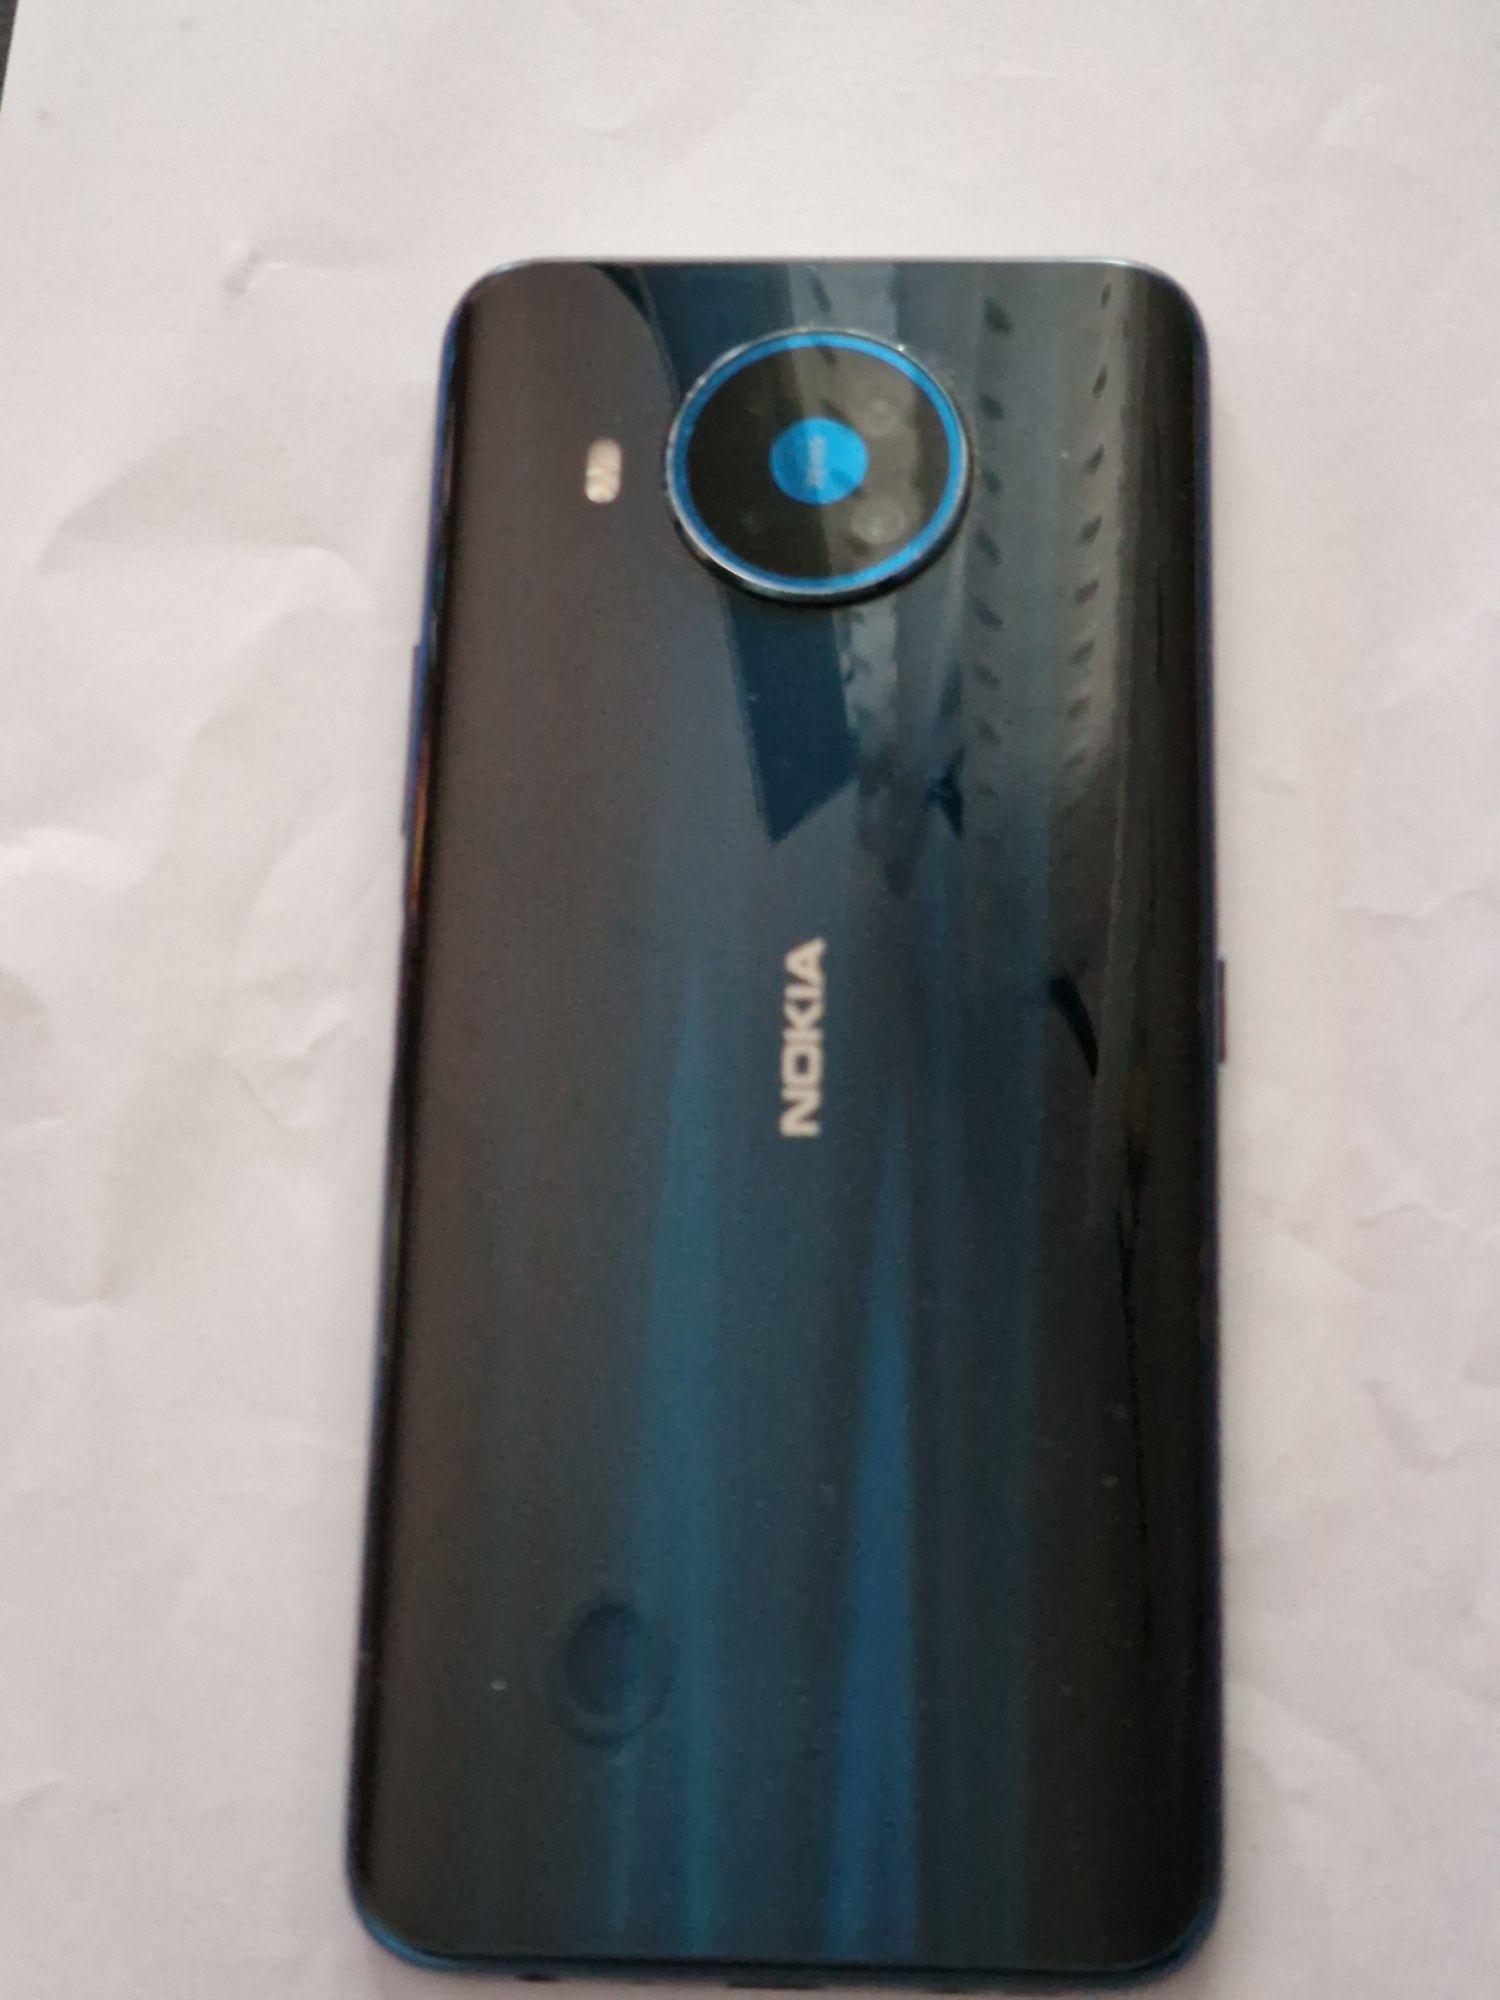 Sprzedam smartfon Nokia 8.3